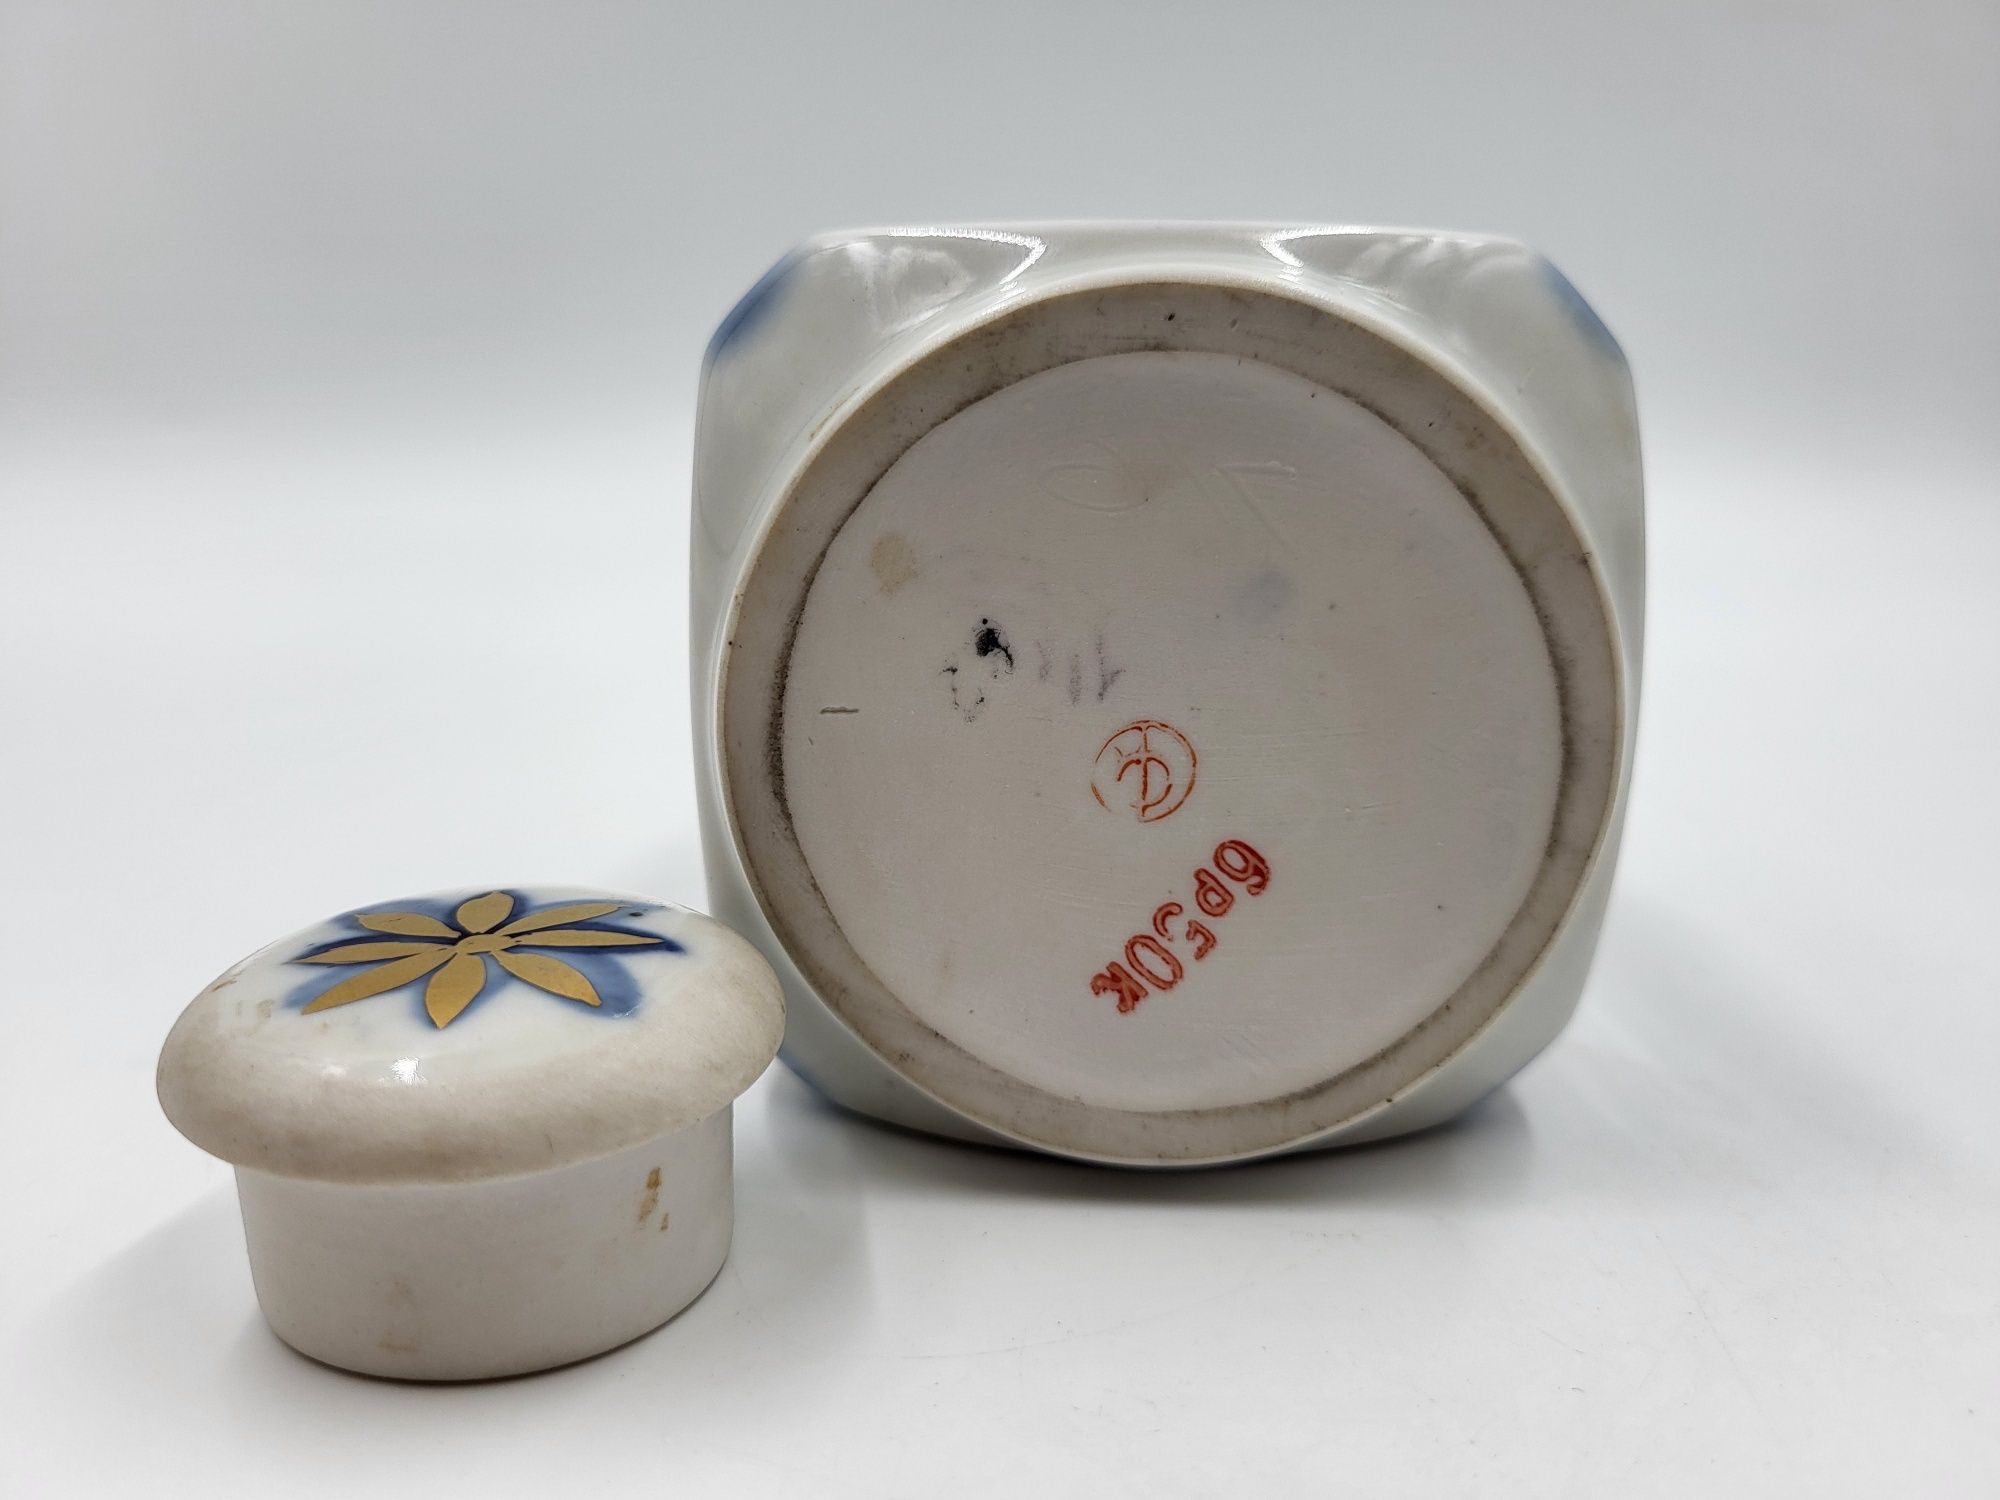 Ładny porcelanowy pojemnik karafla złocona, sygnowana Kislovodsk